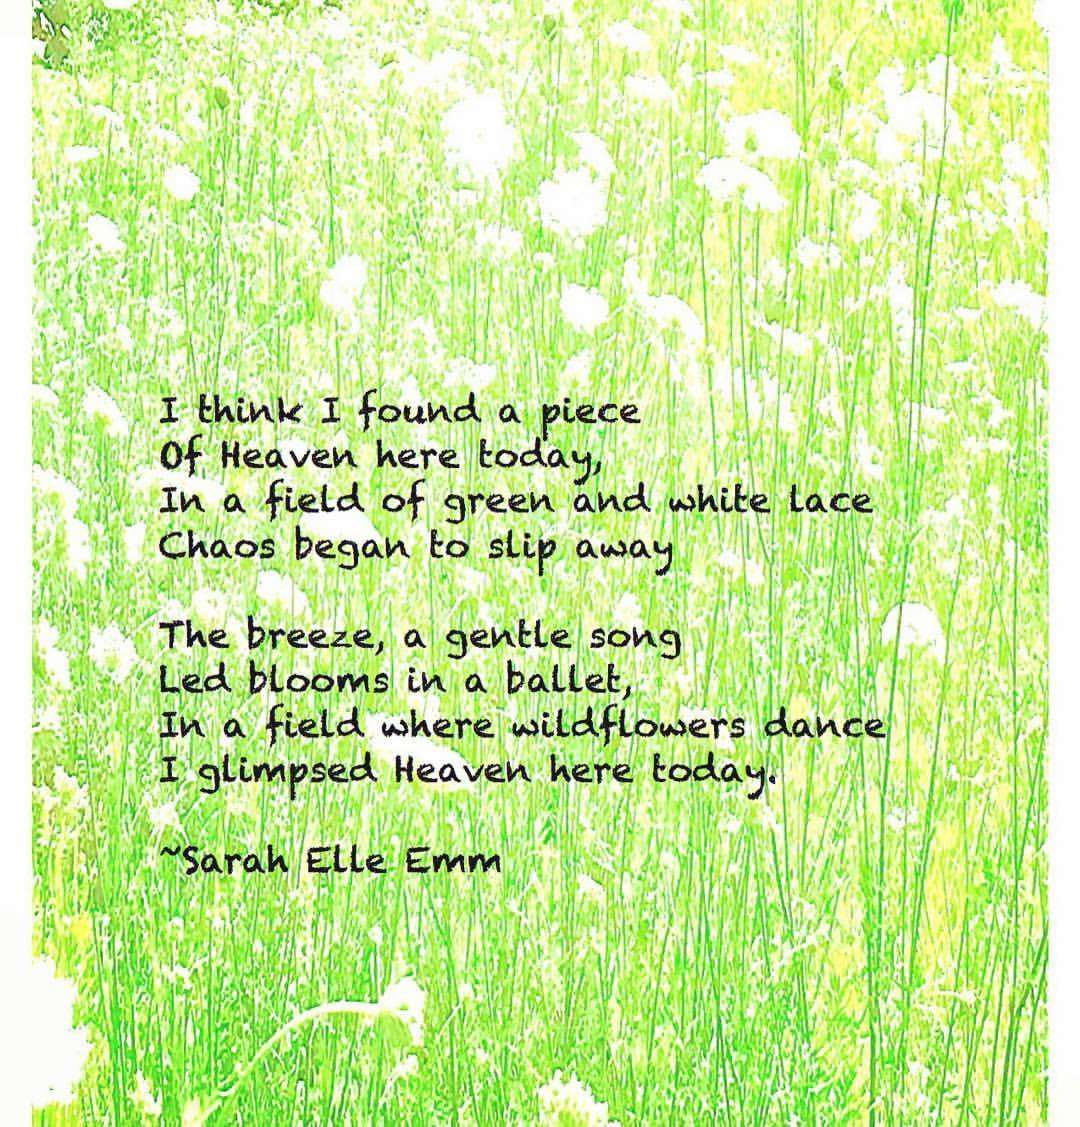 Lace 🖊🌸 #poetry #wildflowers #beauty #Heaven #peace #love #outdoors #writersofinstagram #poetsofinstagram #poet #words #musings #writing #arts #create #nature #QueenAnnesLace #blooms #Indiana #Hoosiers #walking